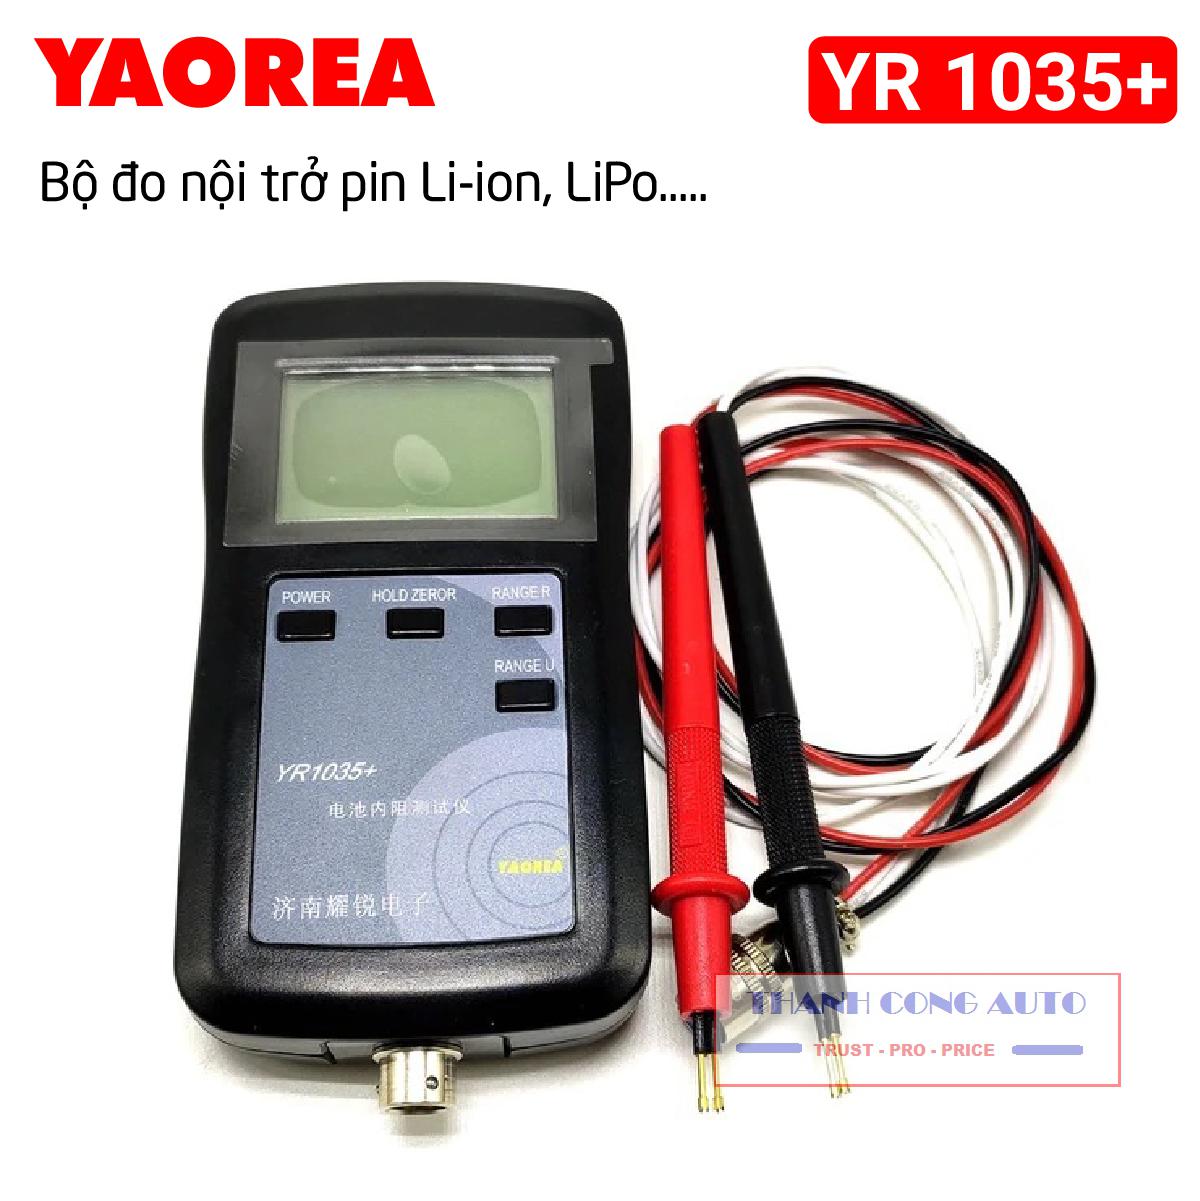 [YR 1035] Máy đo nội trở pin YR1035+ giao diện tiếng anh, độ chính xác cao